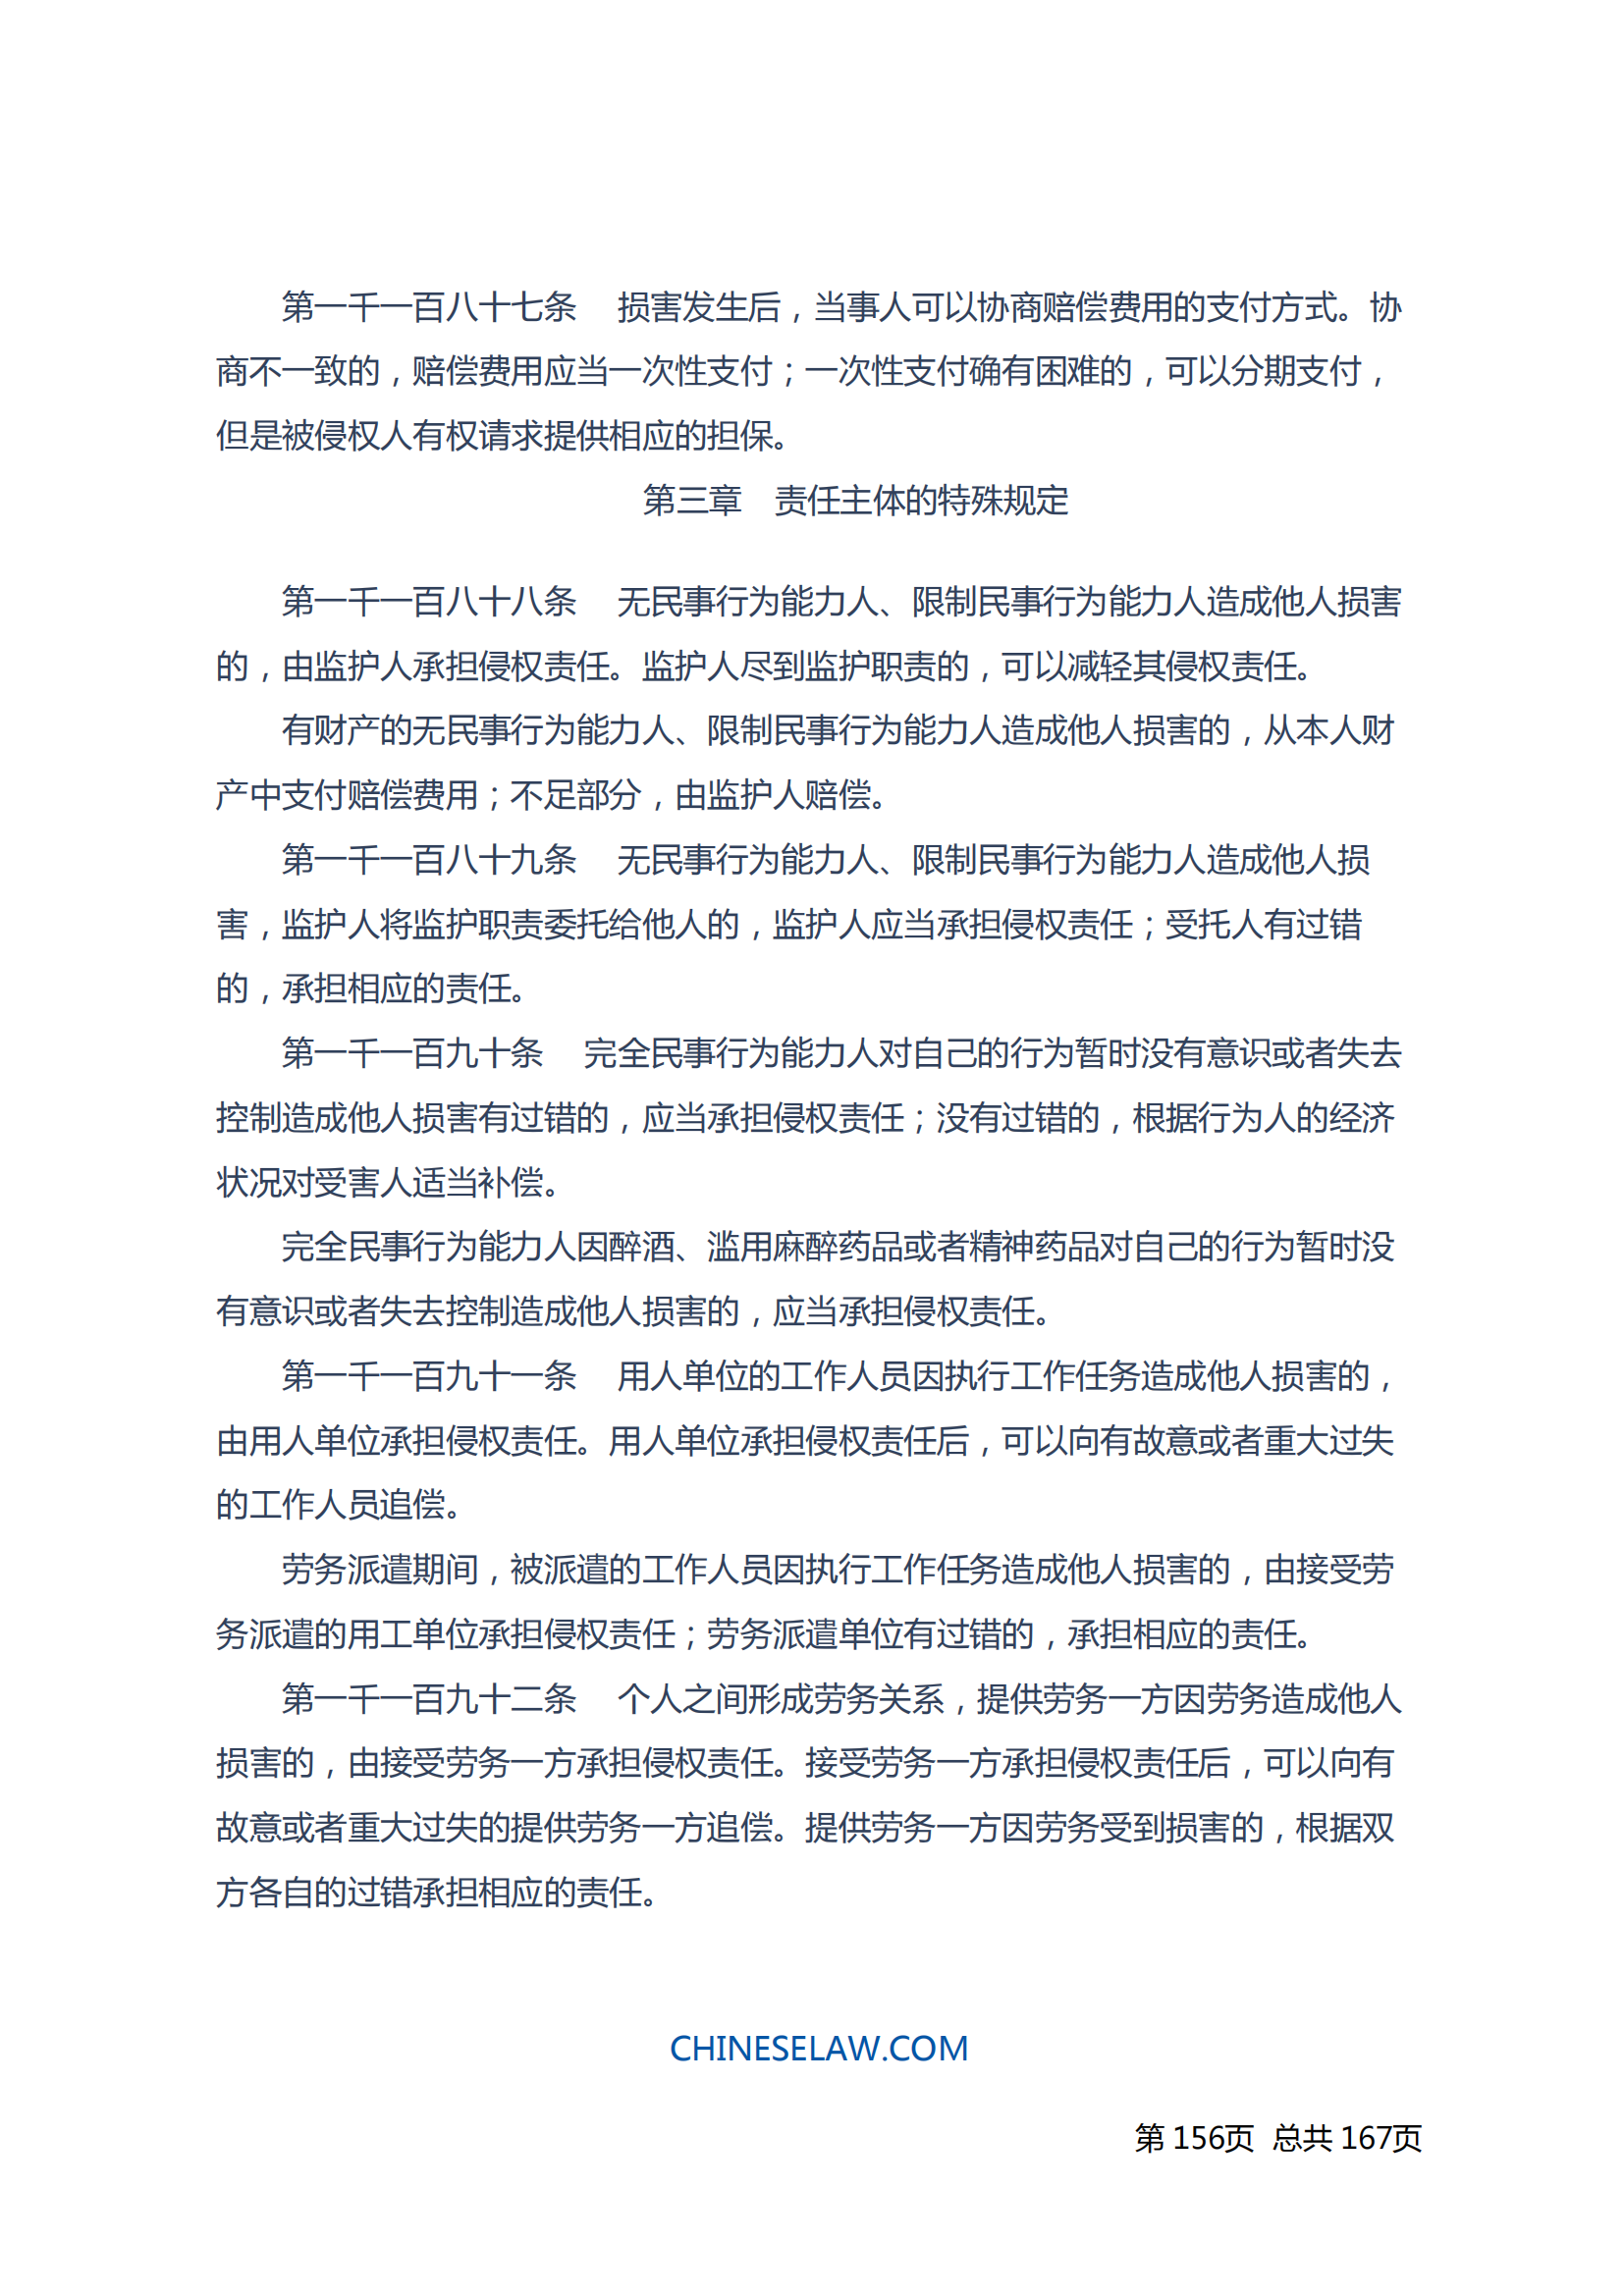 中华人民共和国民法典_155